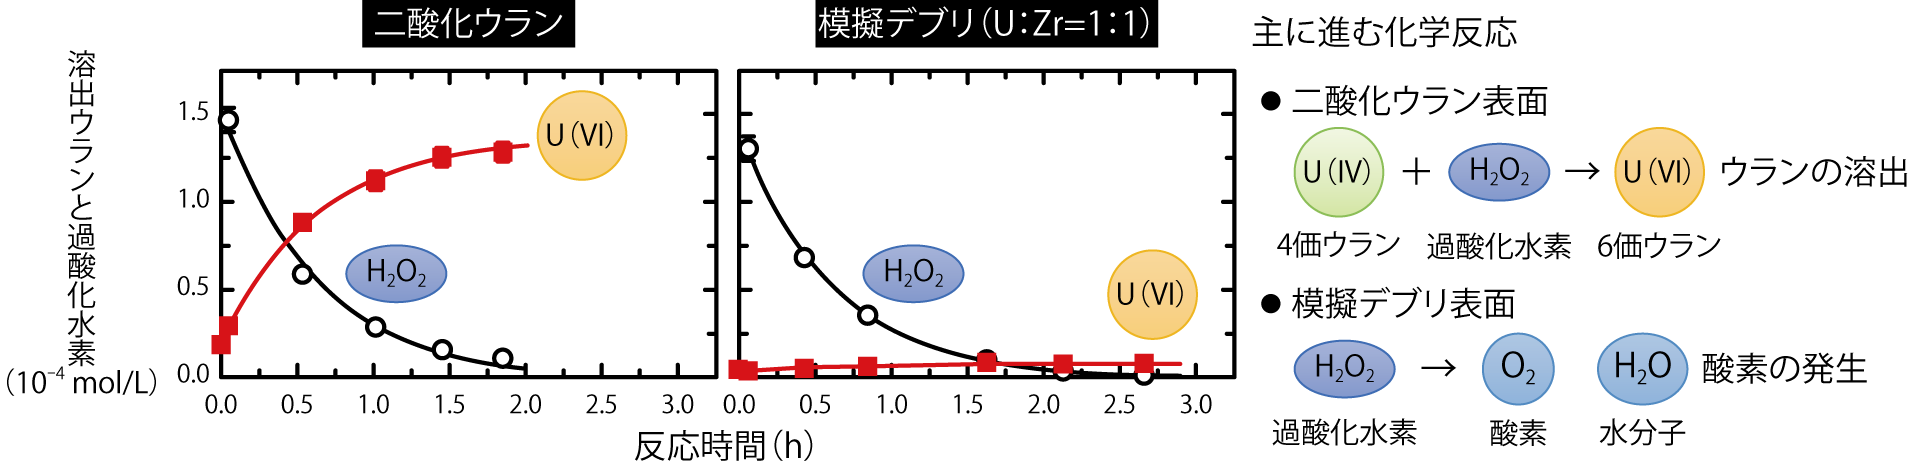 図1-10　UO２と模擬デブリとの過酸化水素反応挙動の比較